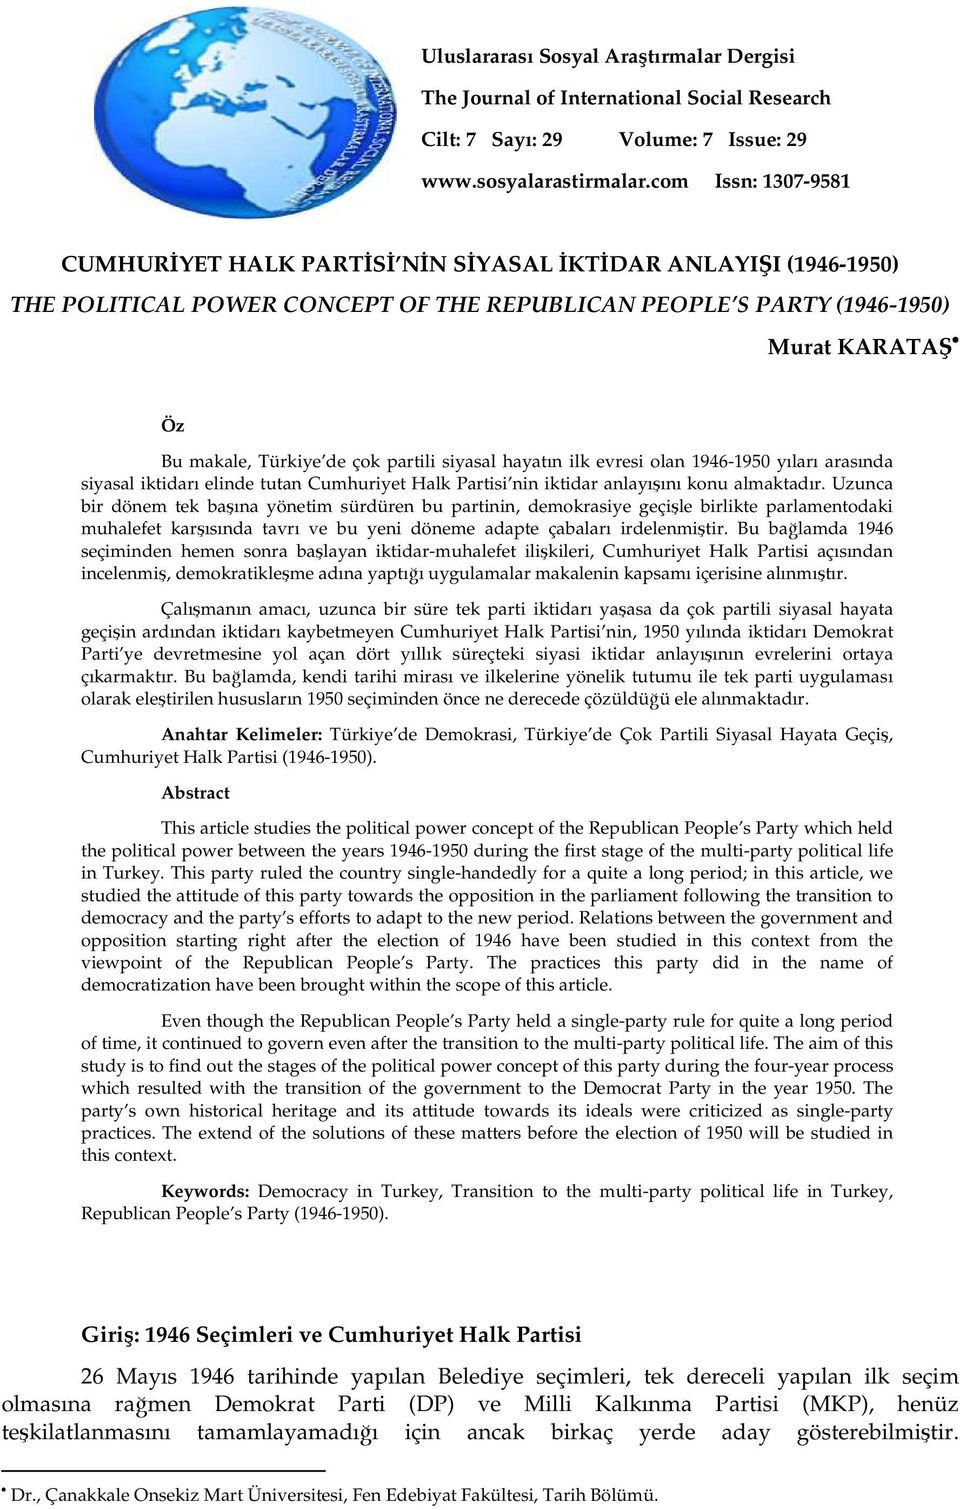 çok partili siyasal hayatın ilk evresi olan 1946-1950 yıları arasında siyasal iktidarı elinde tutan Cumhuriyet Halk Partisi nin iktidar anlayışını konu almaktadır.